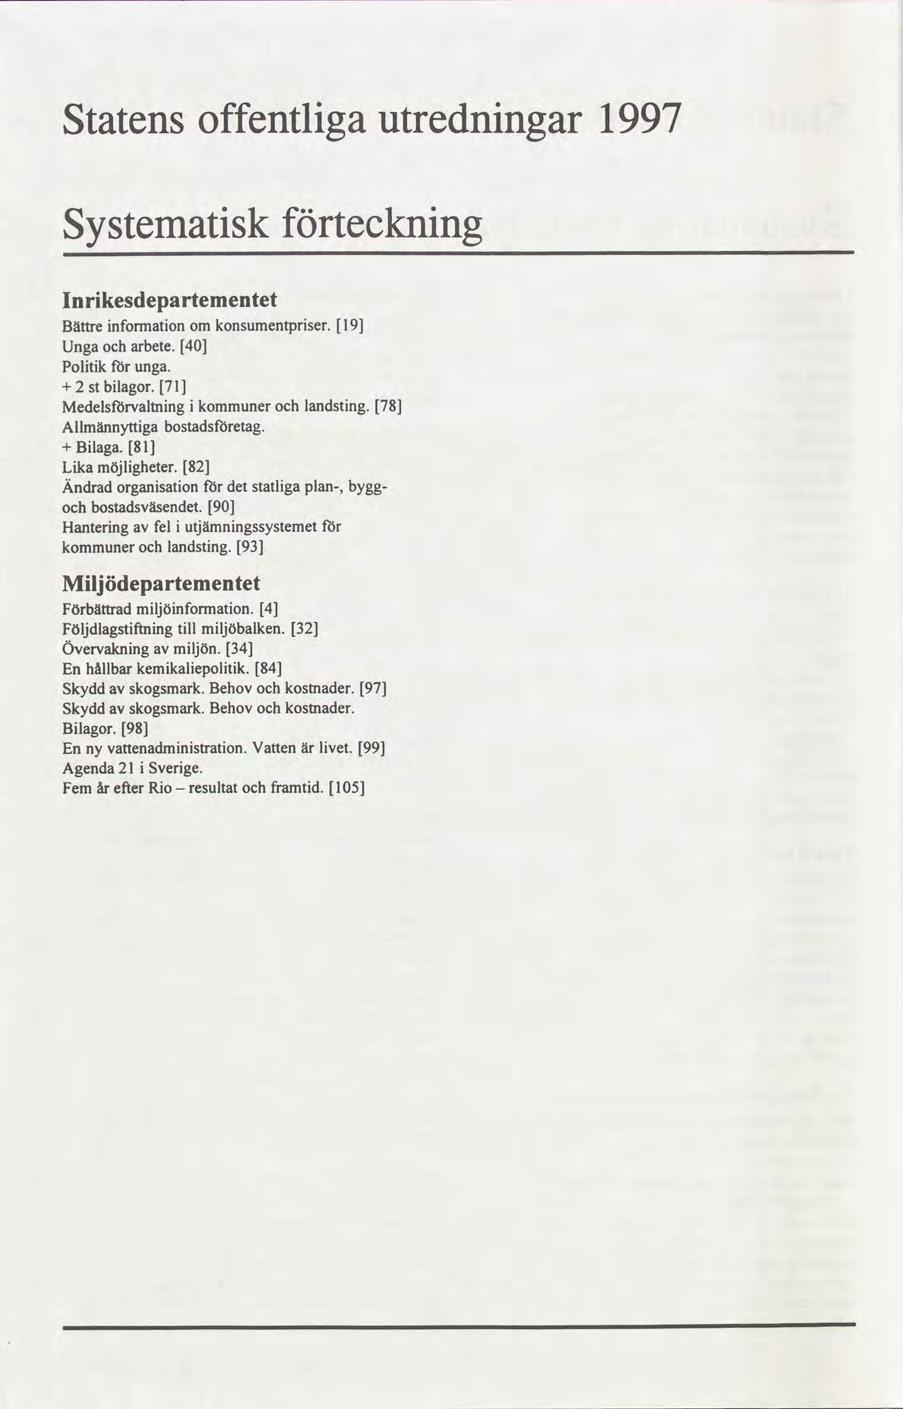 Statens offentliga utredningar 1997 Systematisk förteckning Inrikesdepartementet Bättreinformationom konsumenrpriser. 19 Ungaocharbete. 40 Politik för unga. + 2 bilagor.